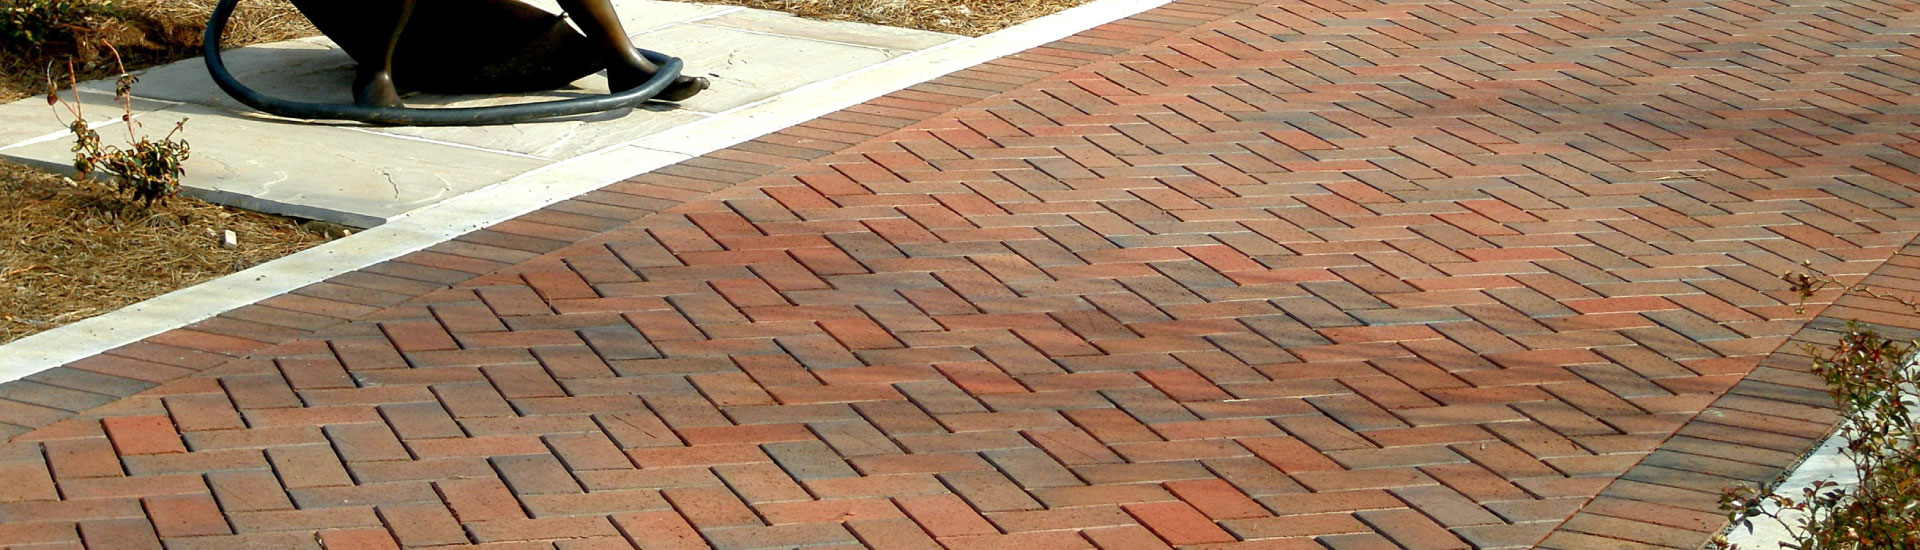 clay brick pavers